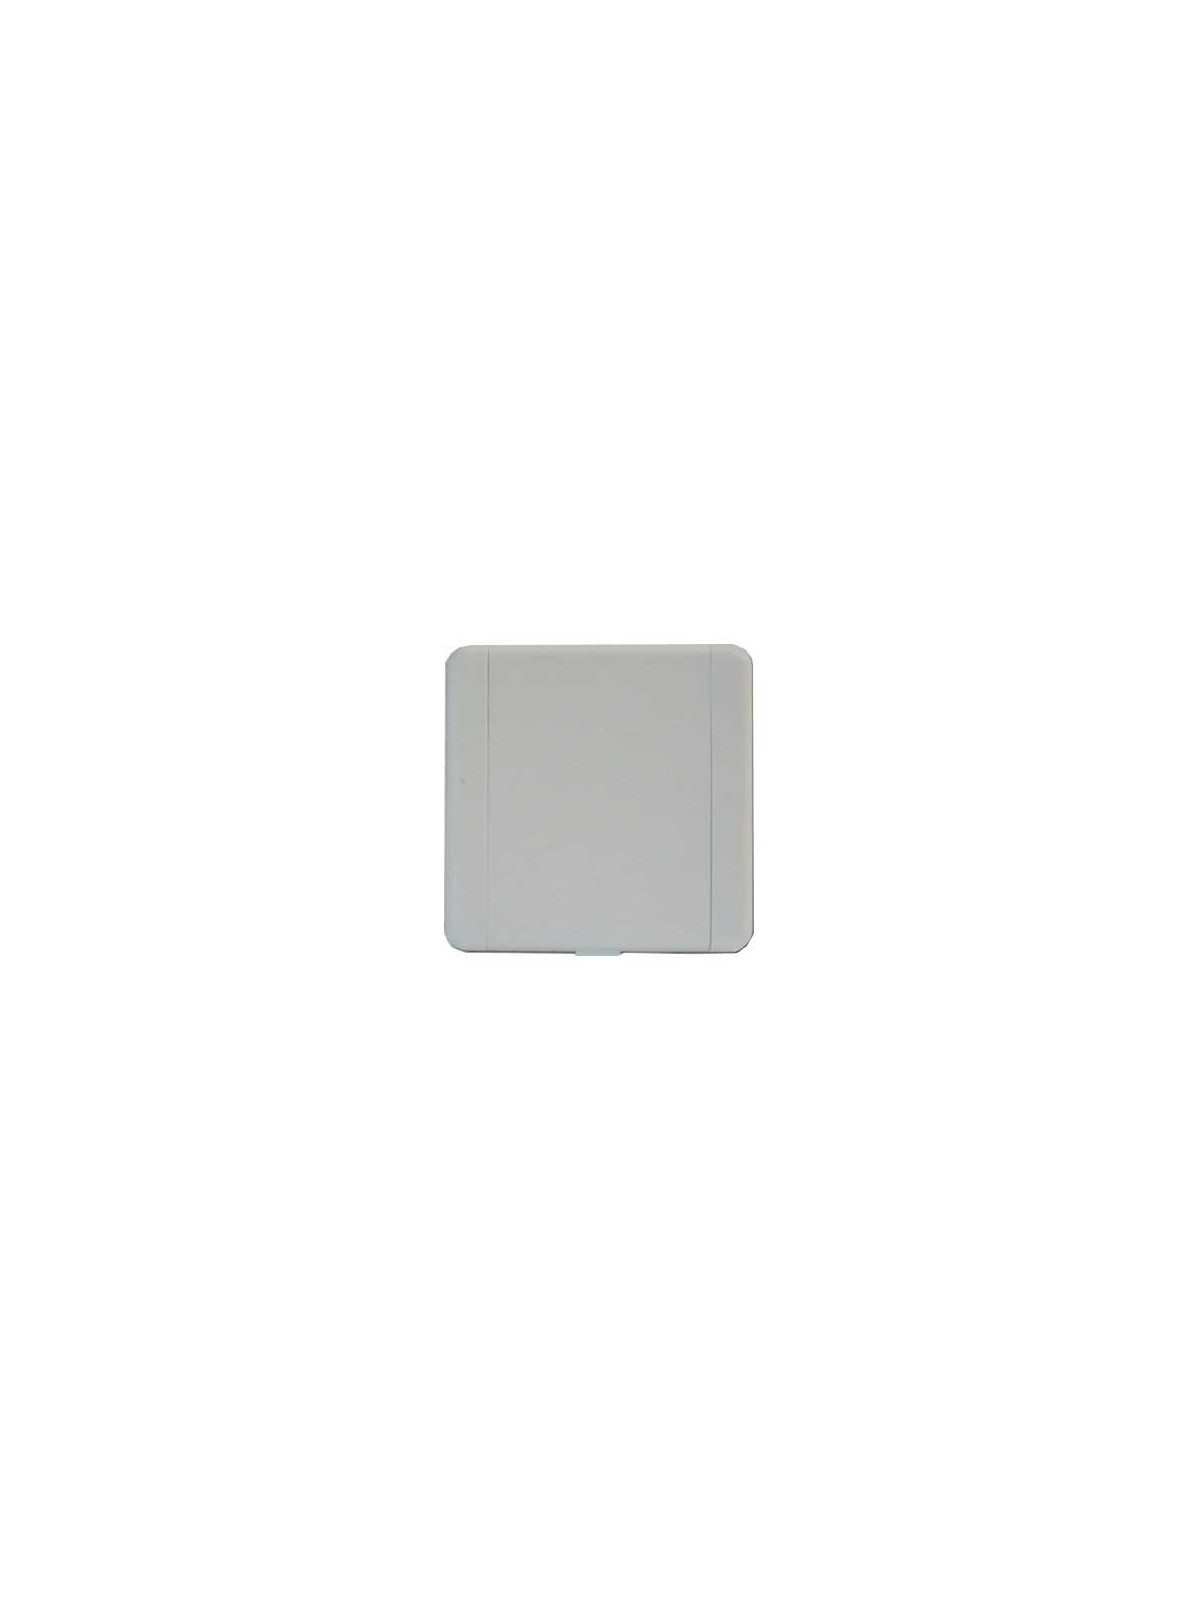 Prise aspiration carrée Eco 9 x 9 cm blanche D51